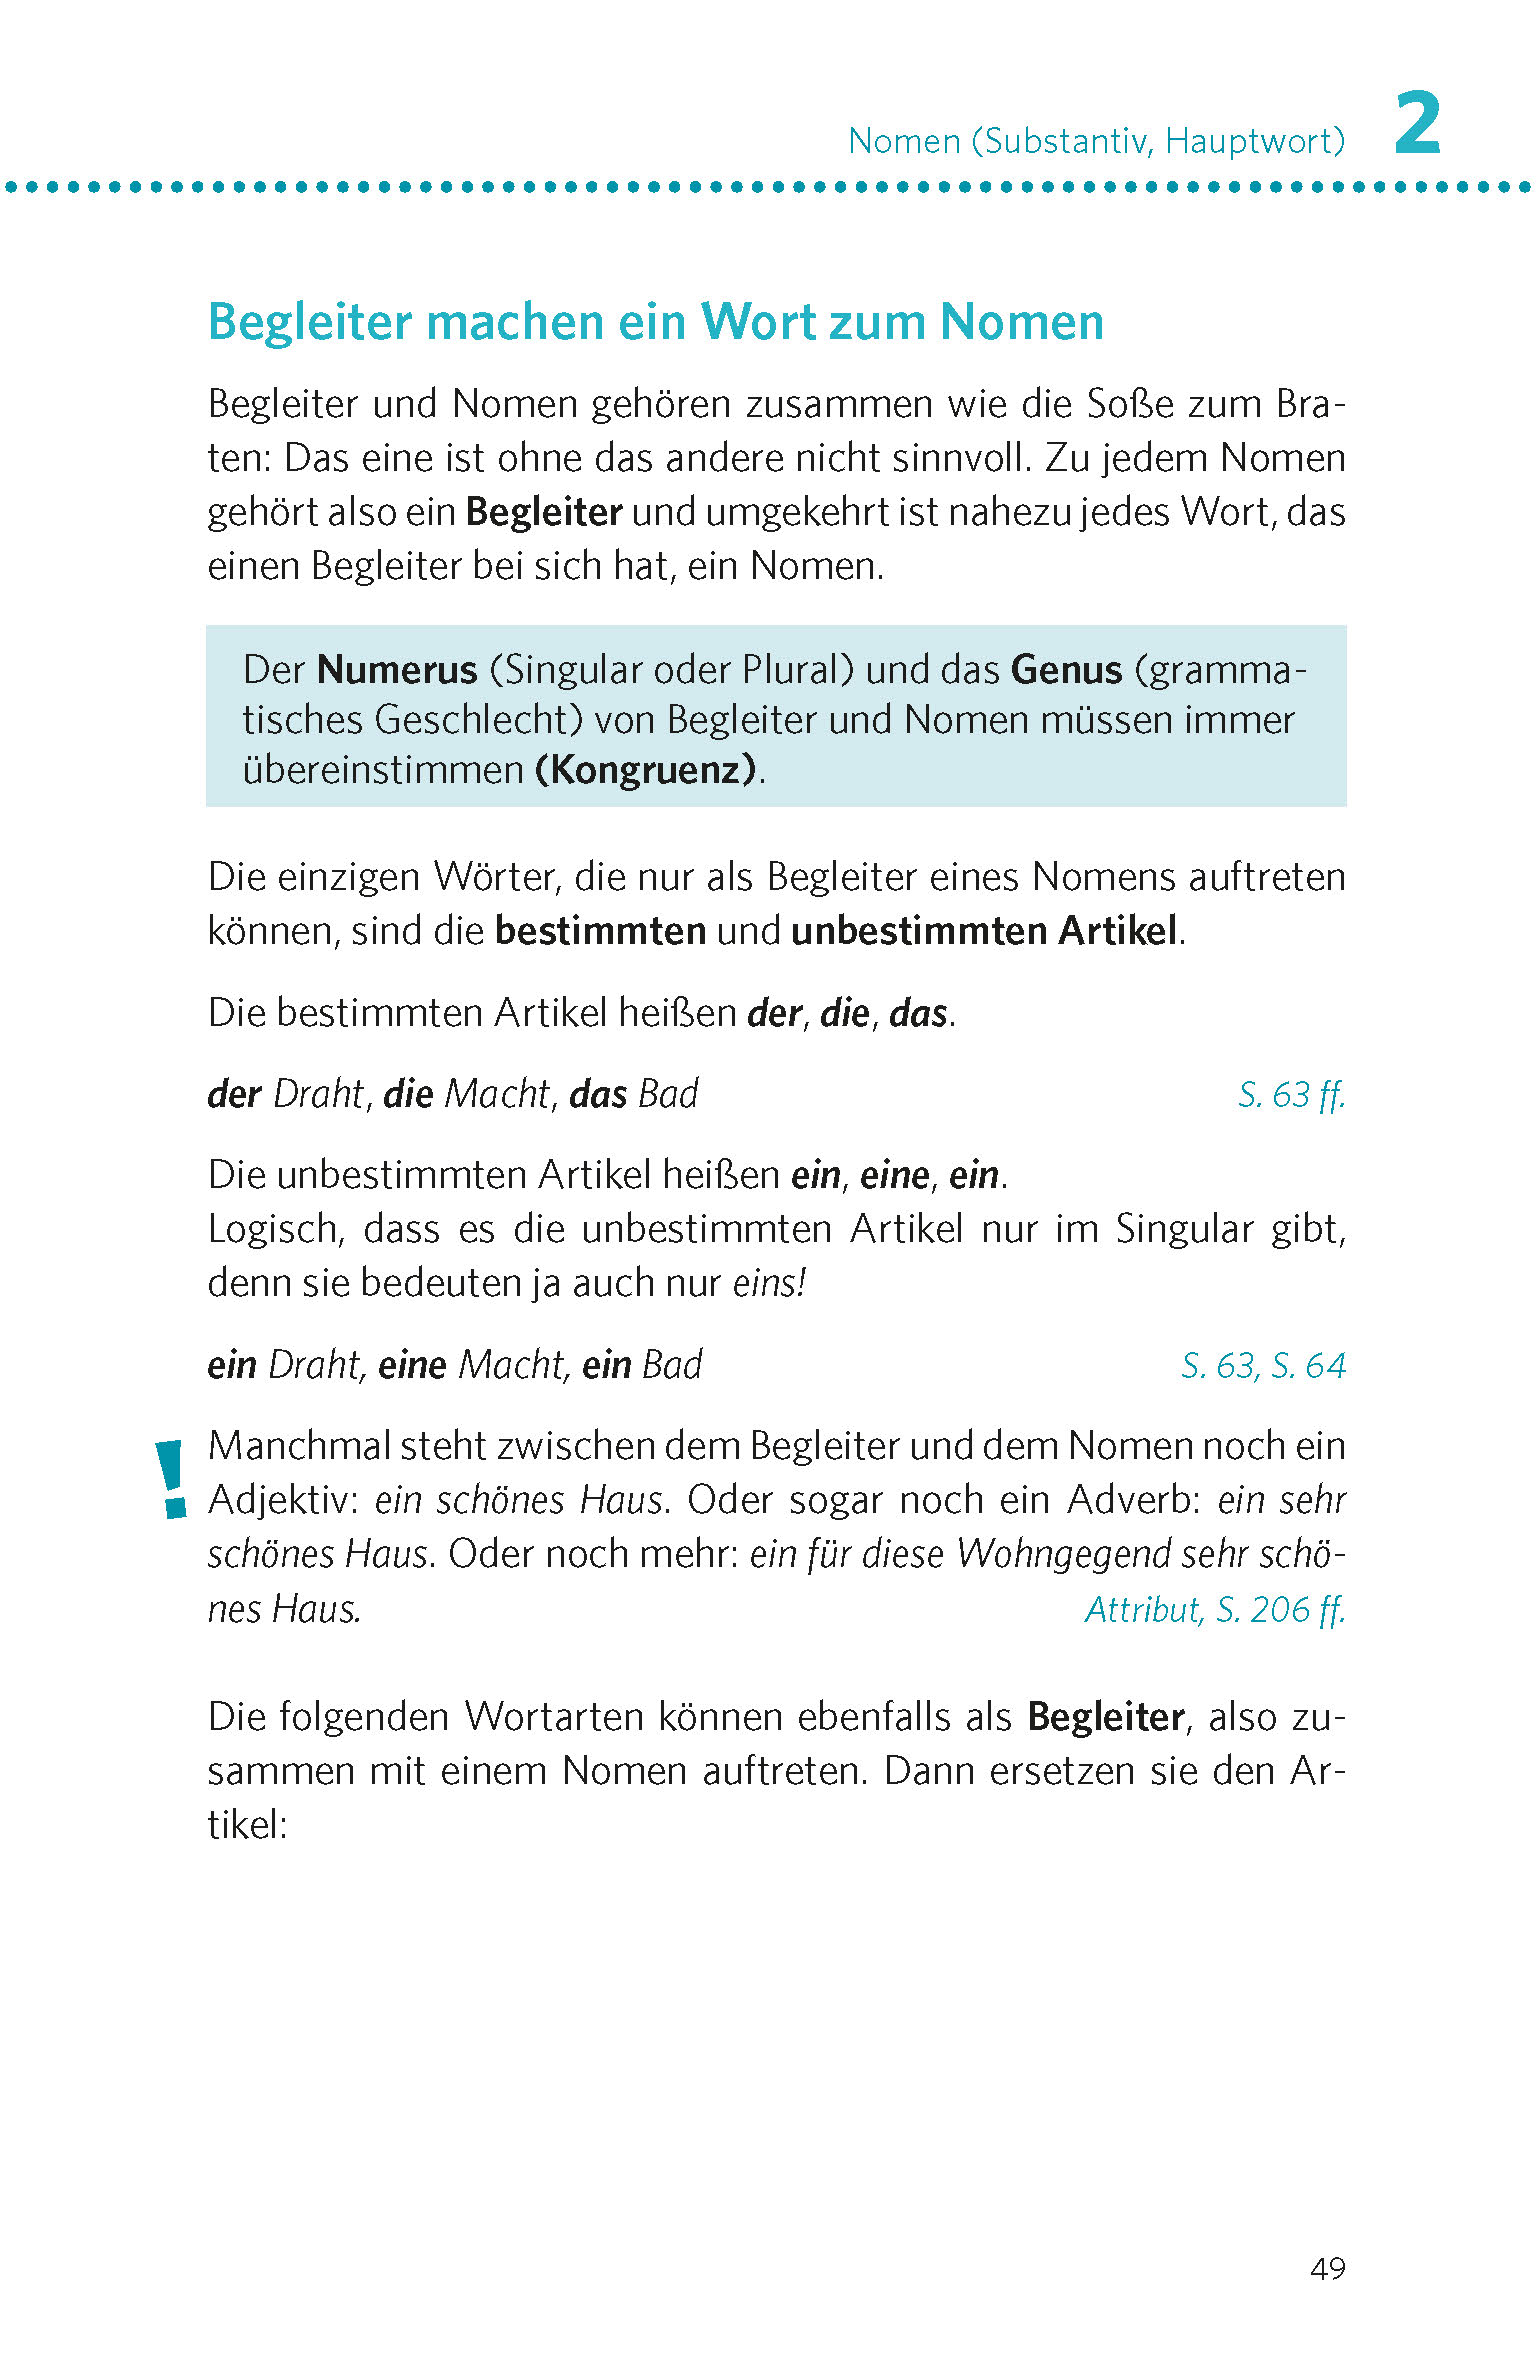 PONS Deutsche Grammatik & Rechtschreibung